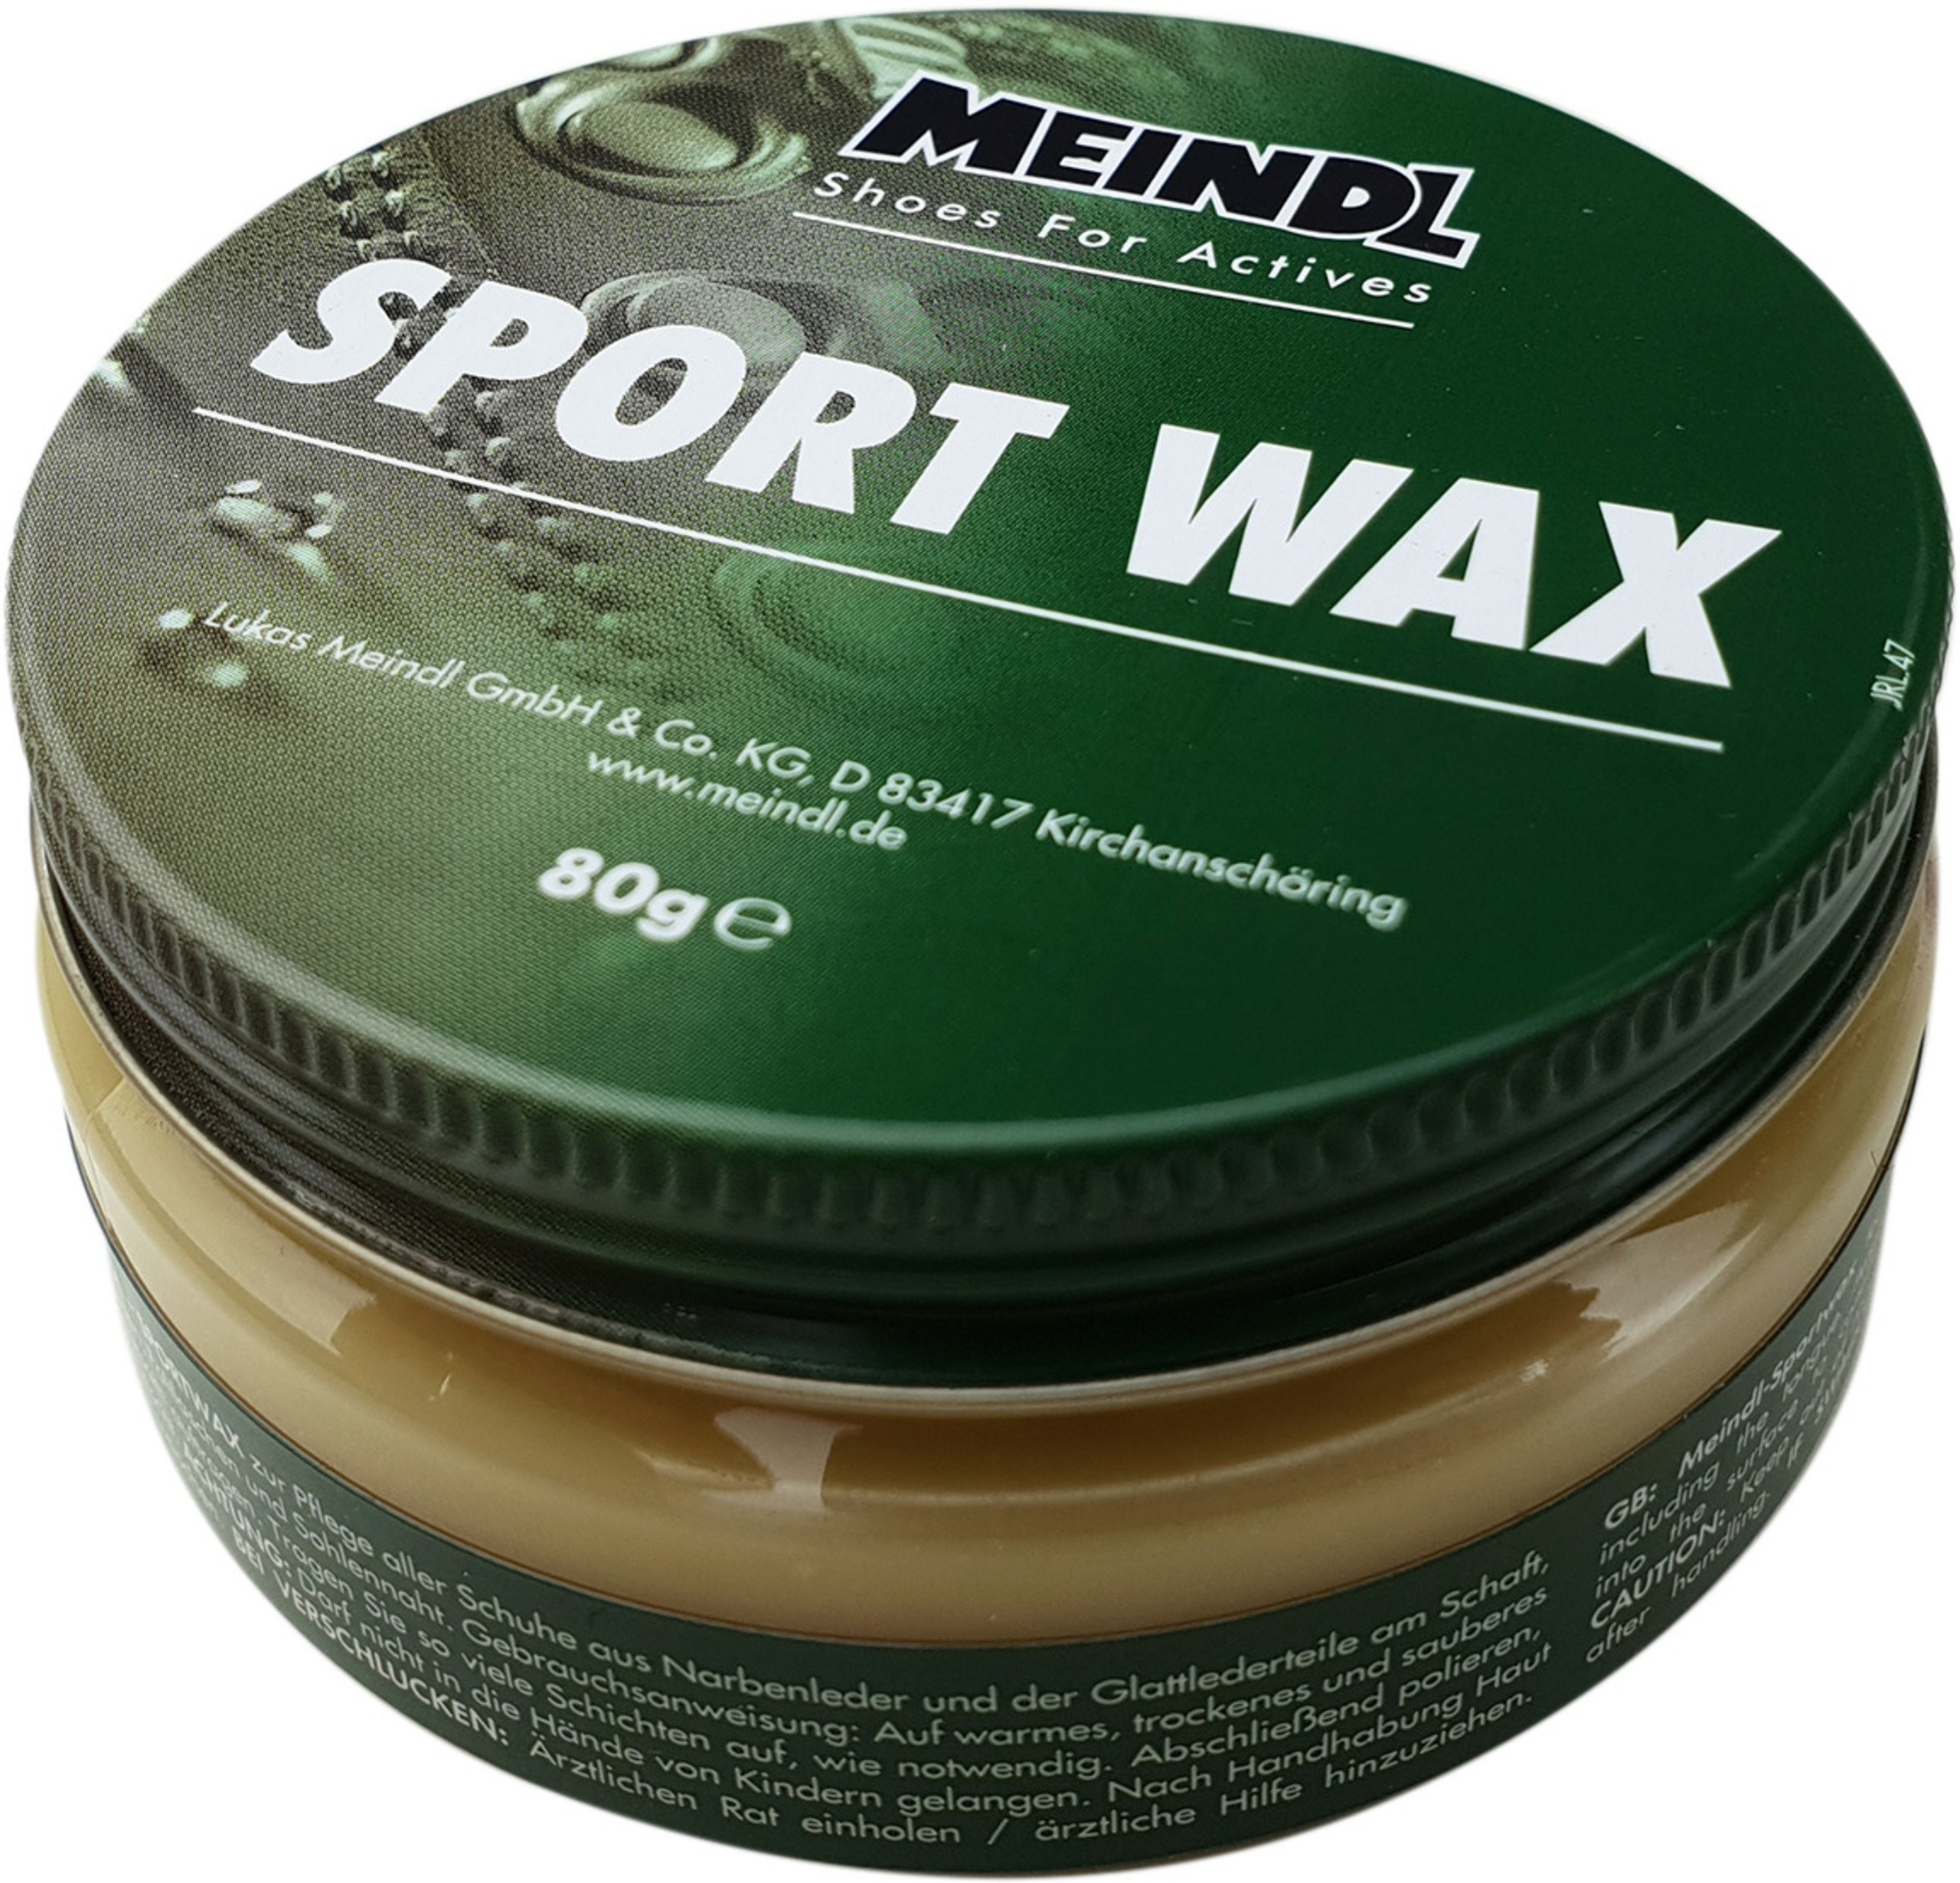 Meindl Sport Wax